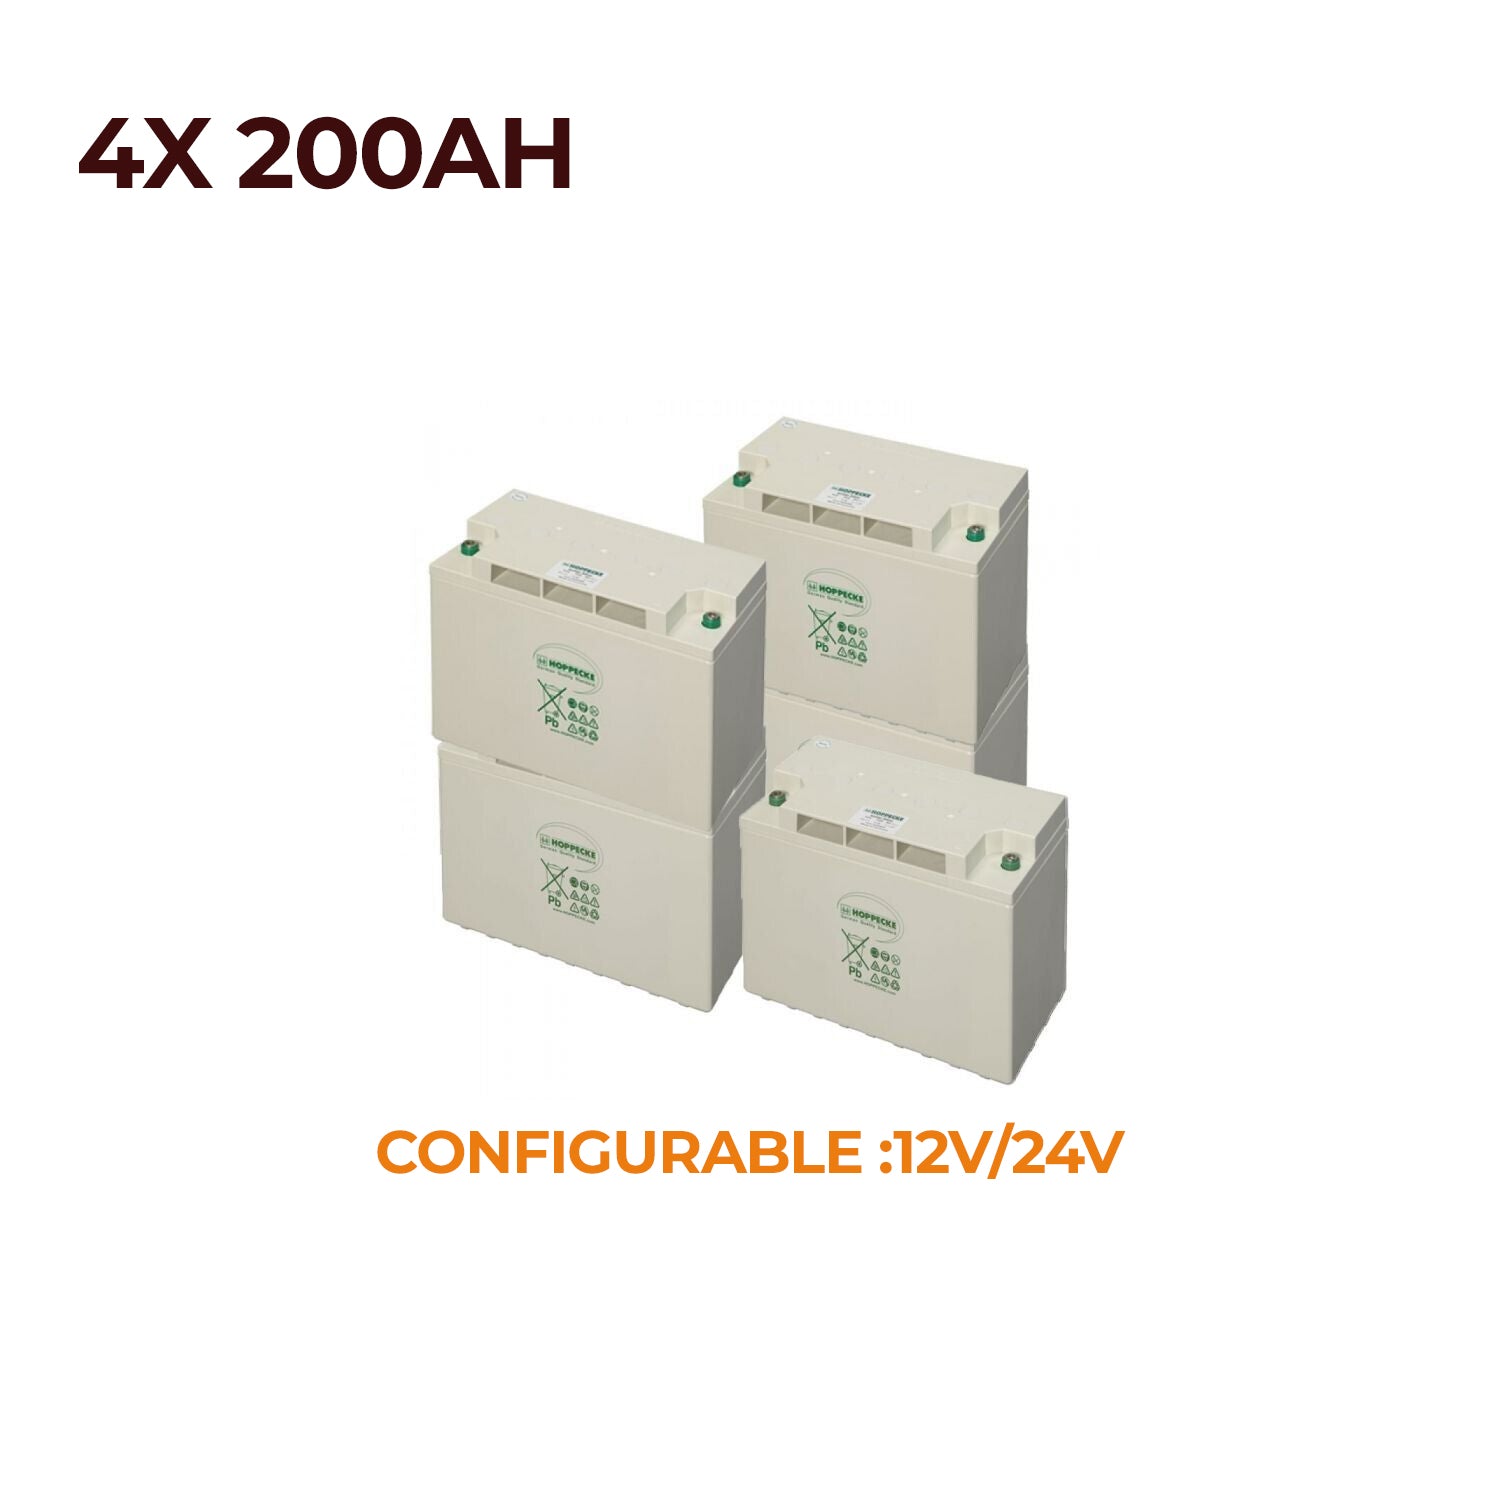 Hoppecke AGM Batteries 200Ah Pack of 4 - 12V/24V/4.8kWh